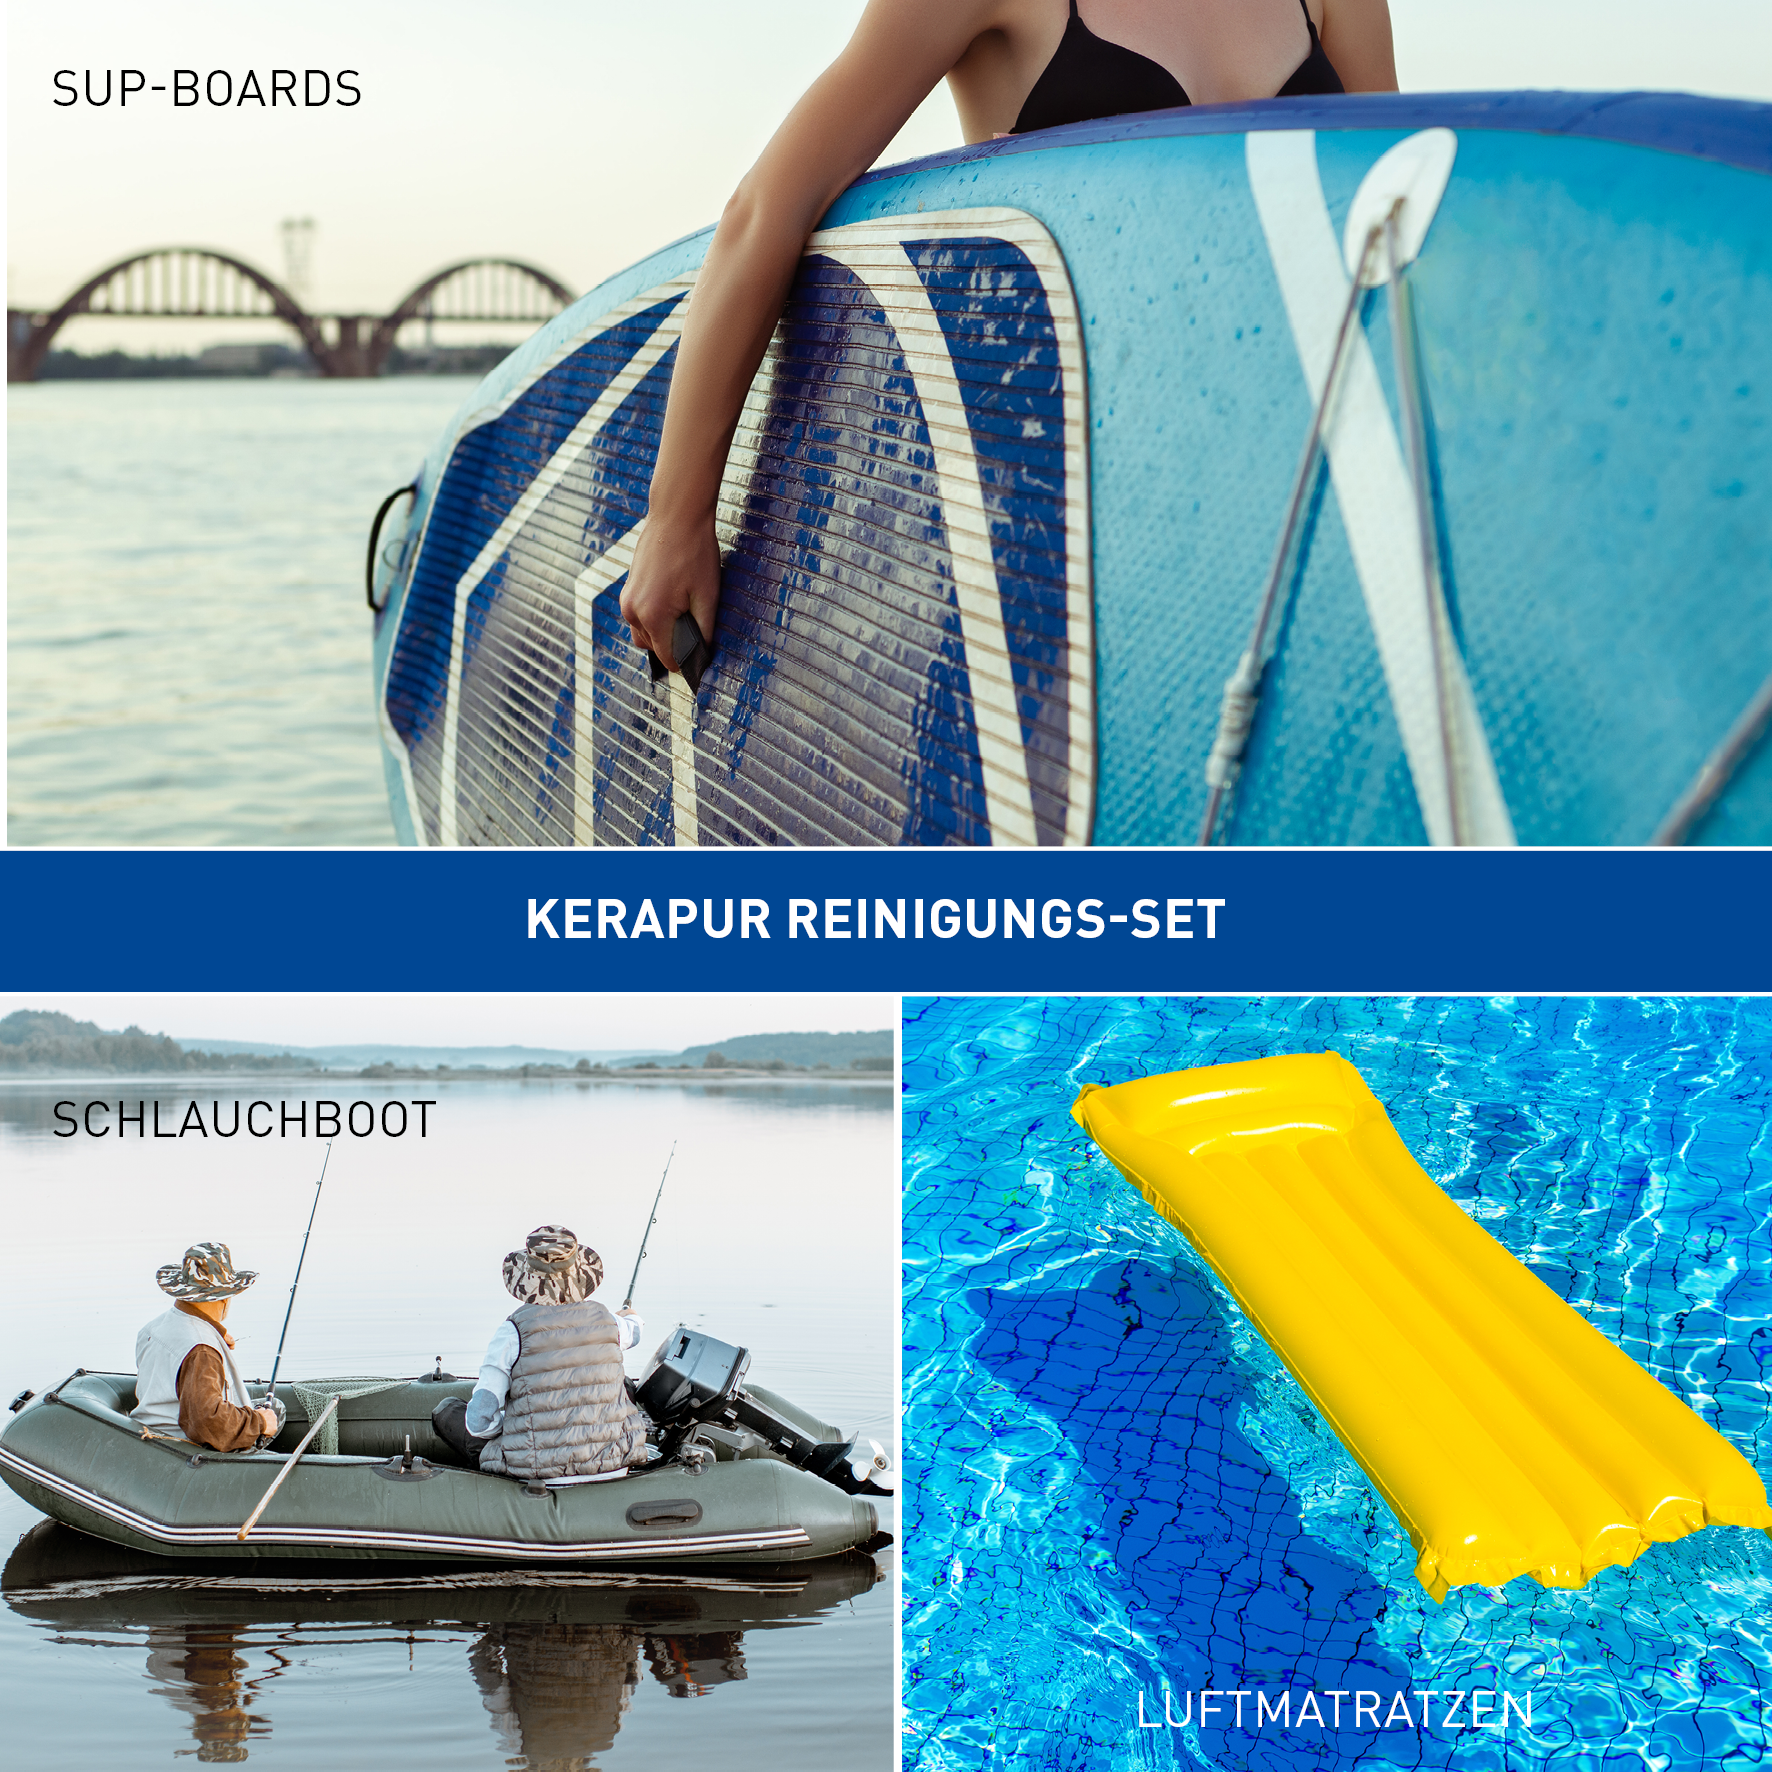 KERAPUR Reinigungs-Set für SUP-Boards und Schlauchboote 2